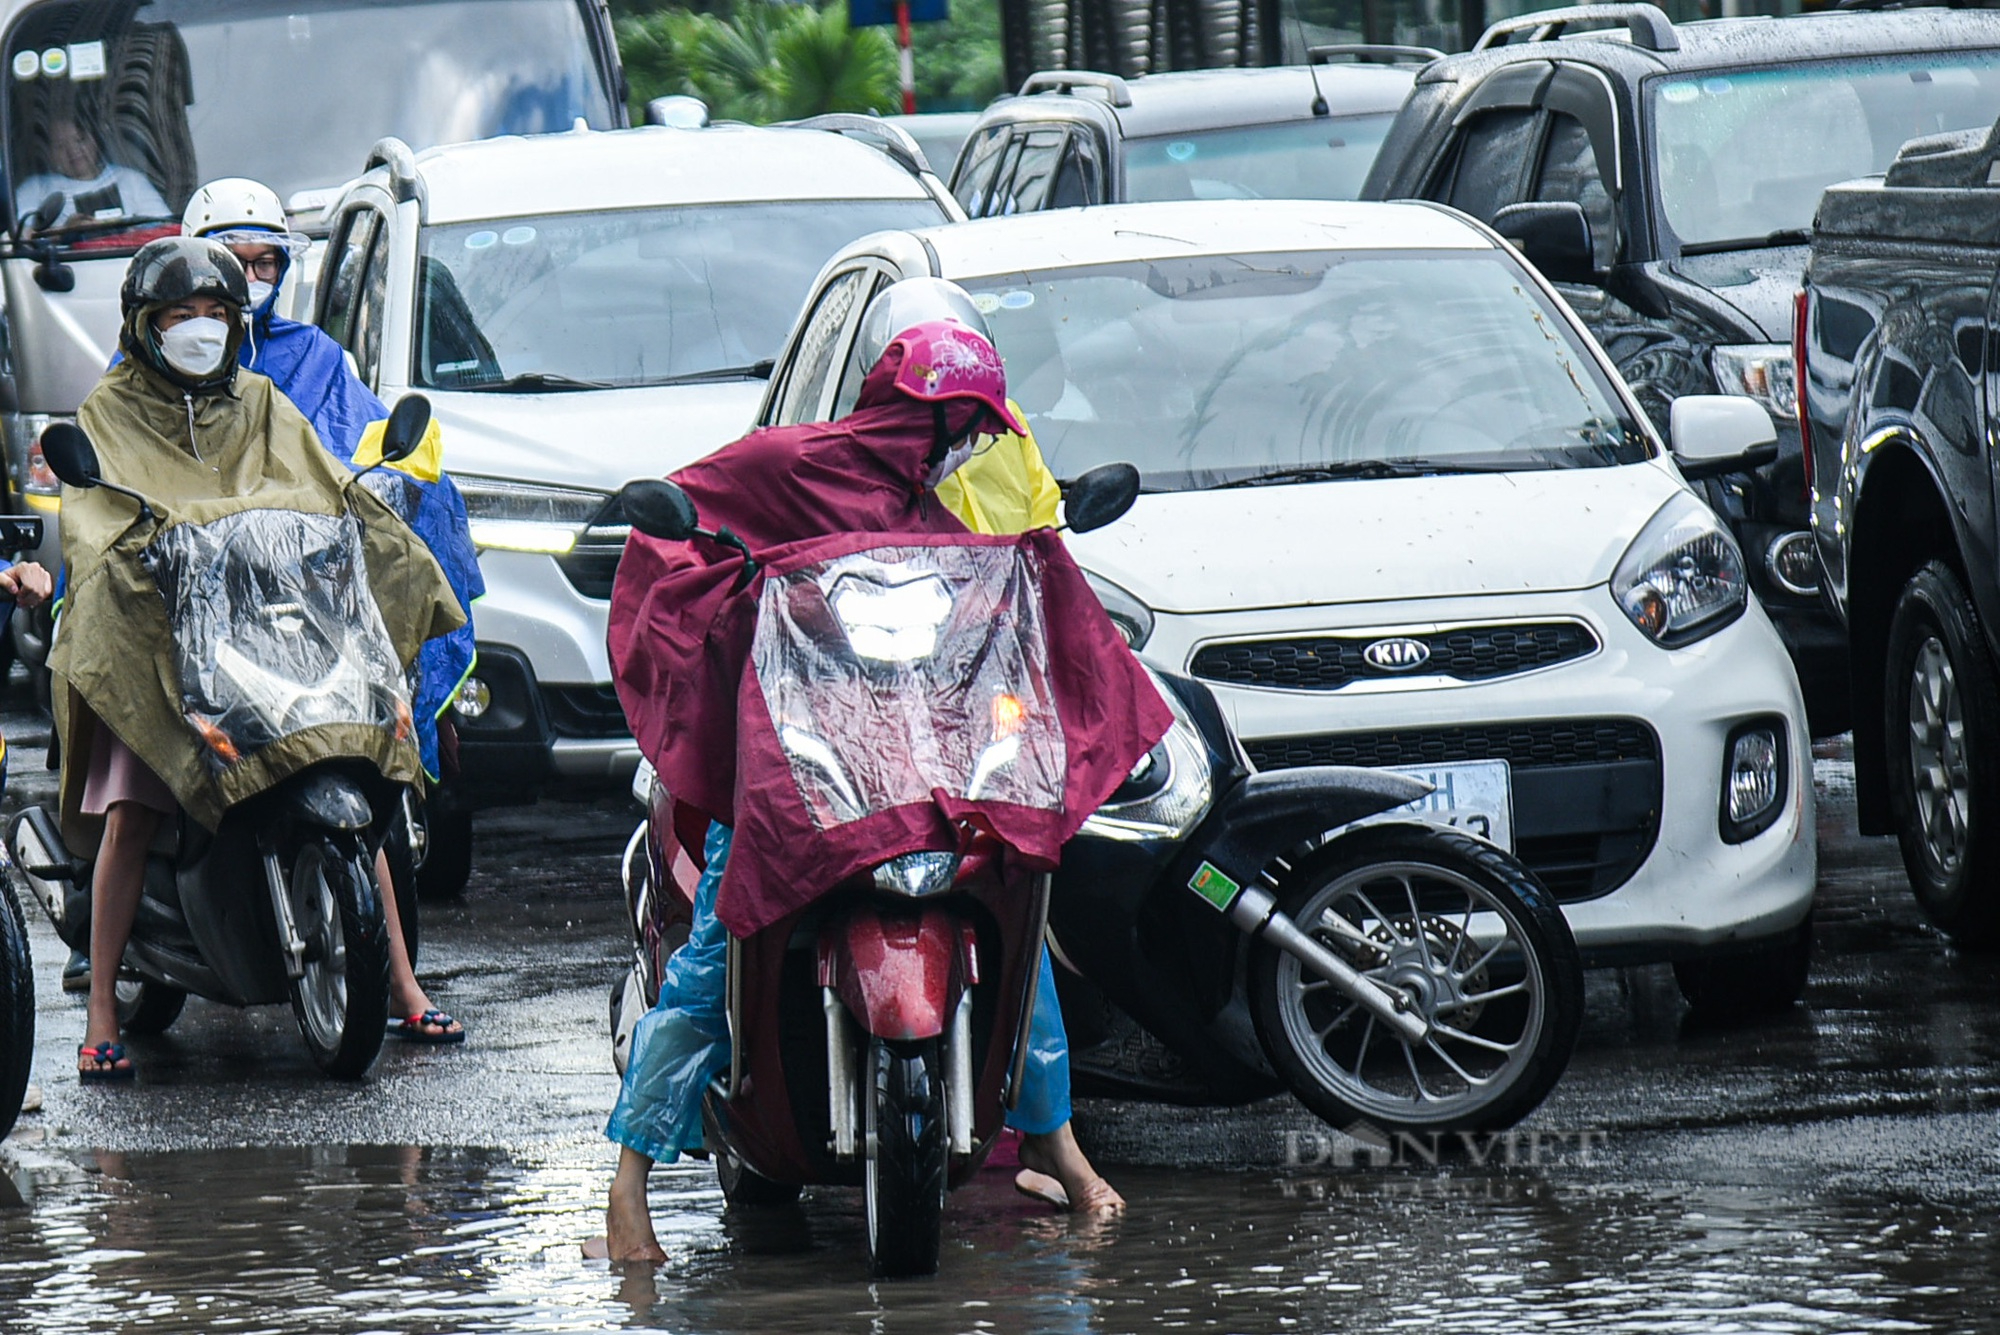 Đường phố Hà Nội tắc 'không lối thoát' sau cơn mưa tầm tã vào giờ cao điểm - Ảnh 13.